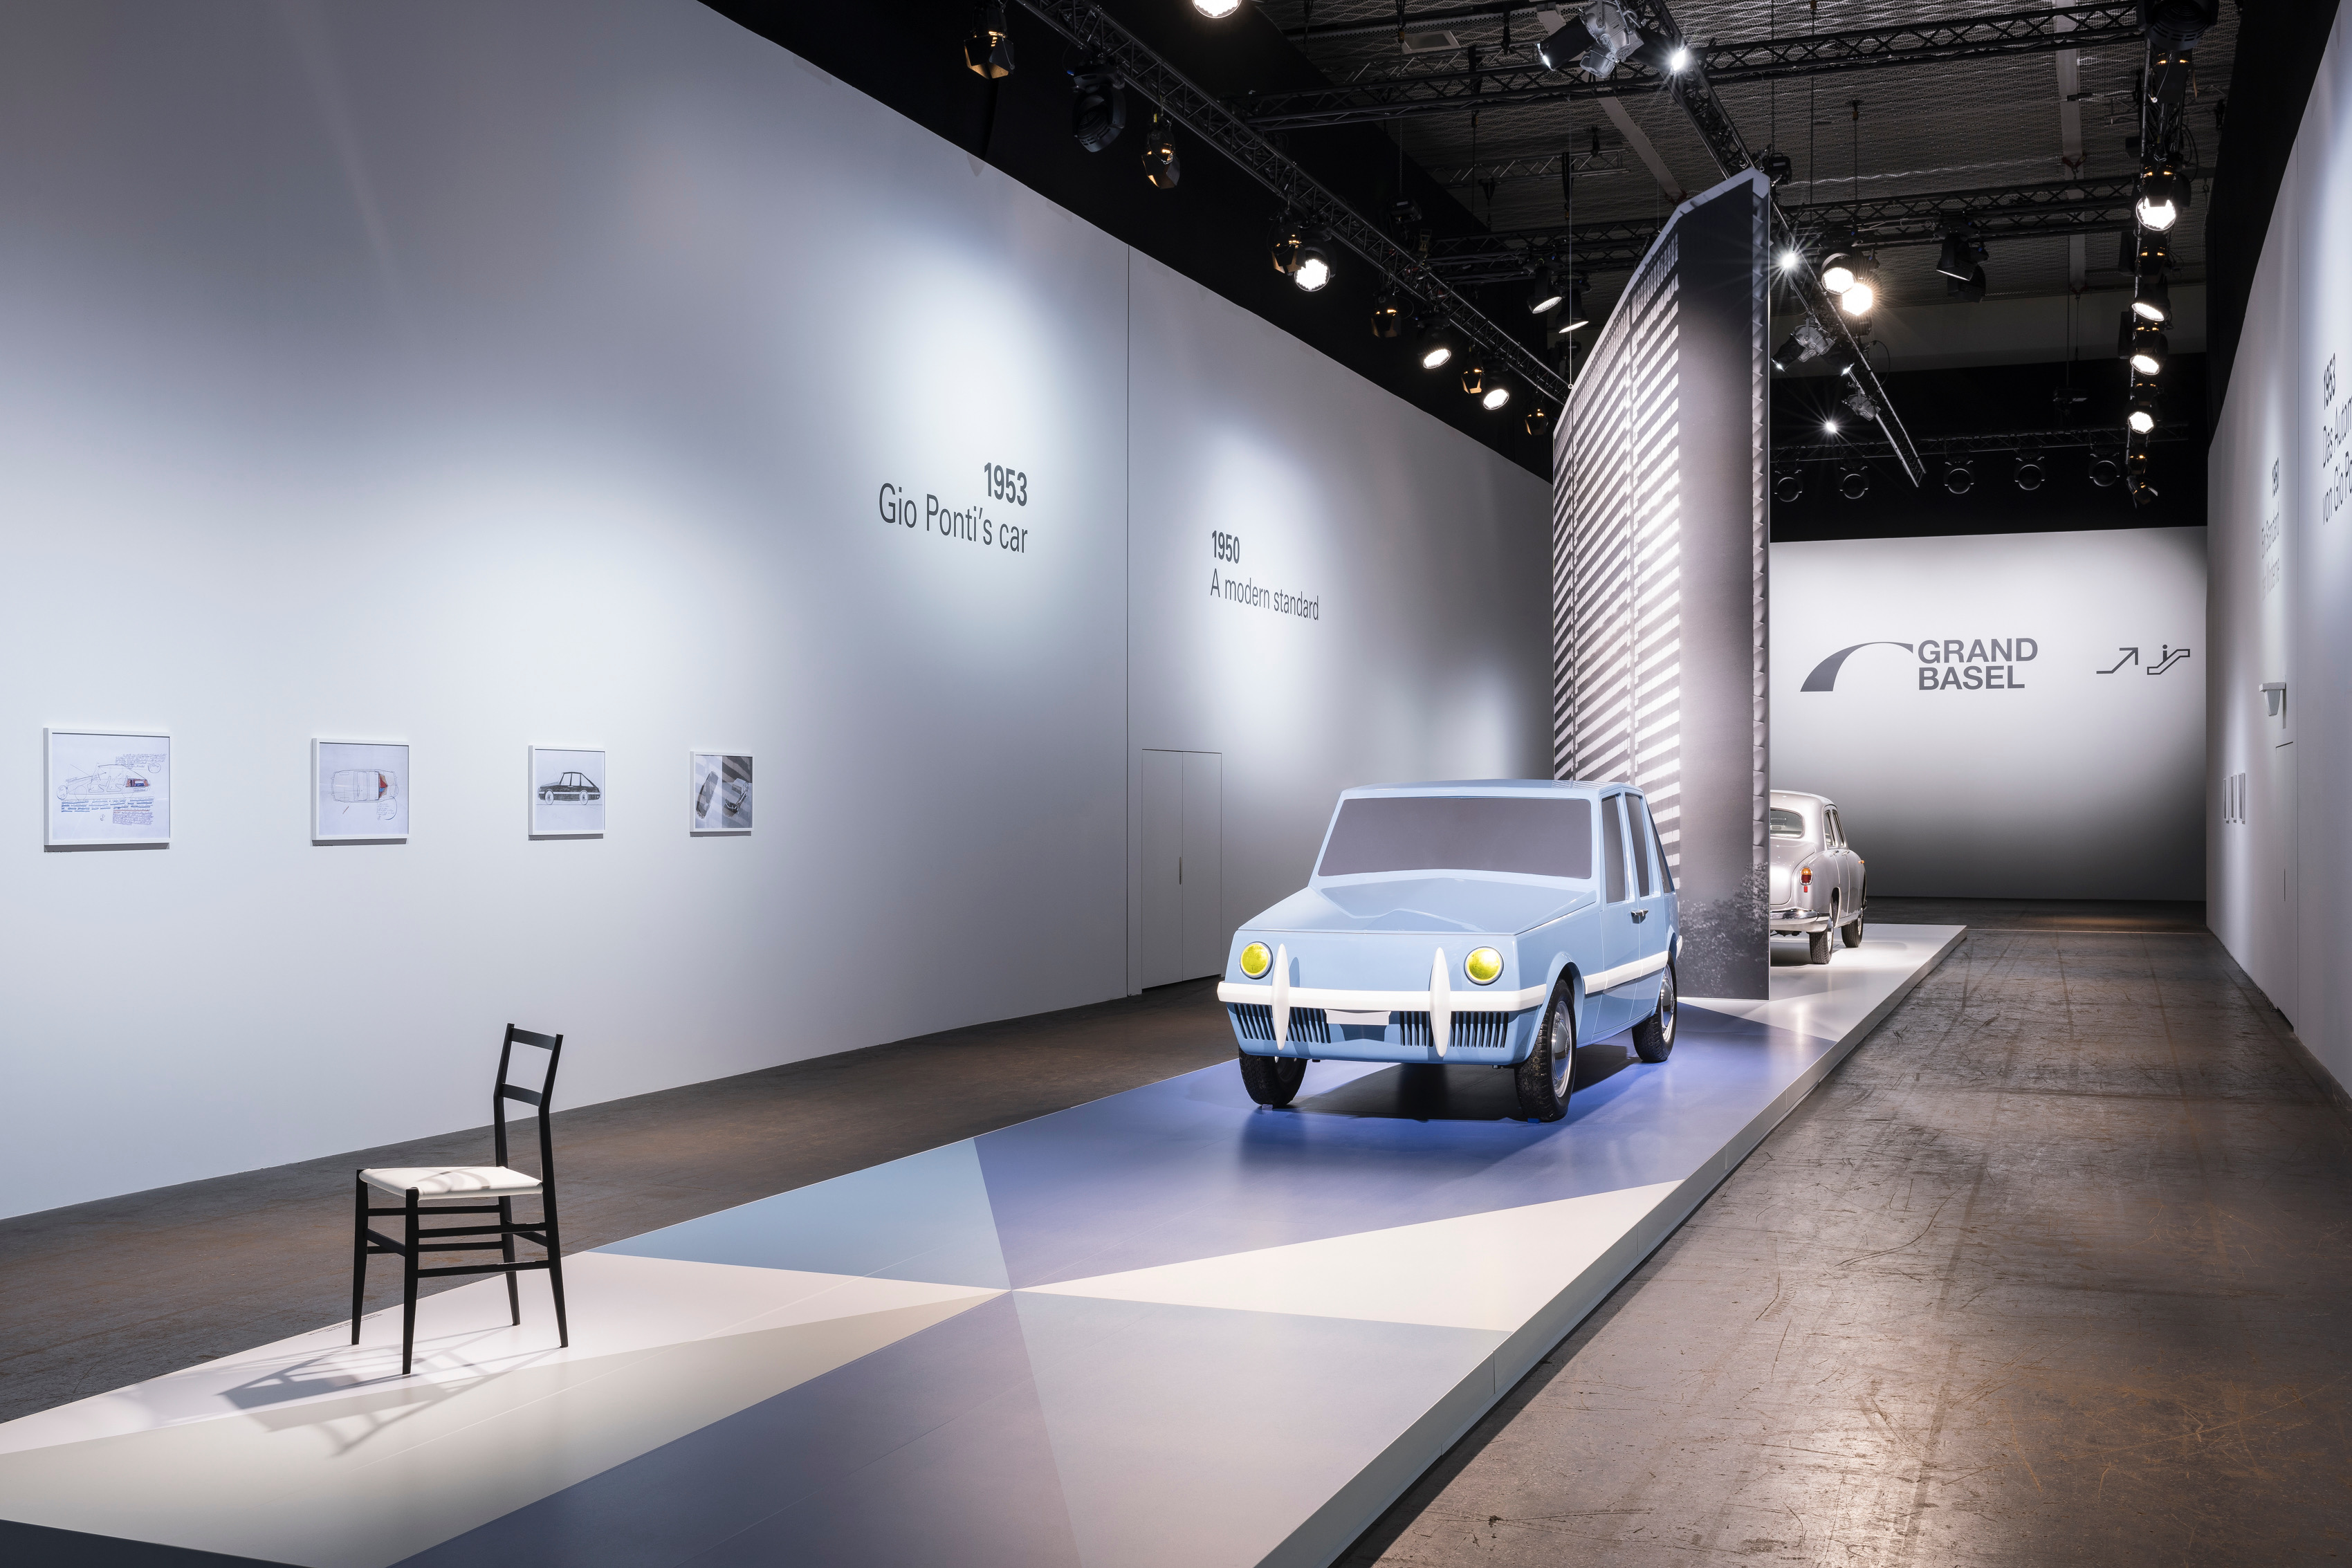 Grand Basel, Architect’s Linea Diamante car unveiled, ClassicCars.com Journal